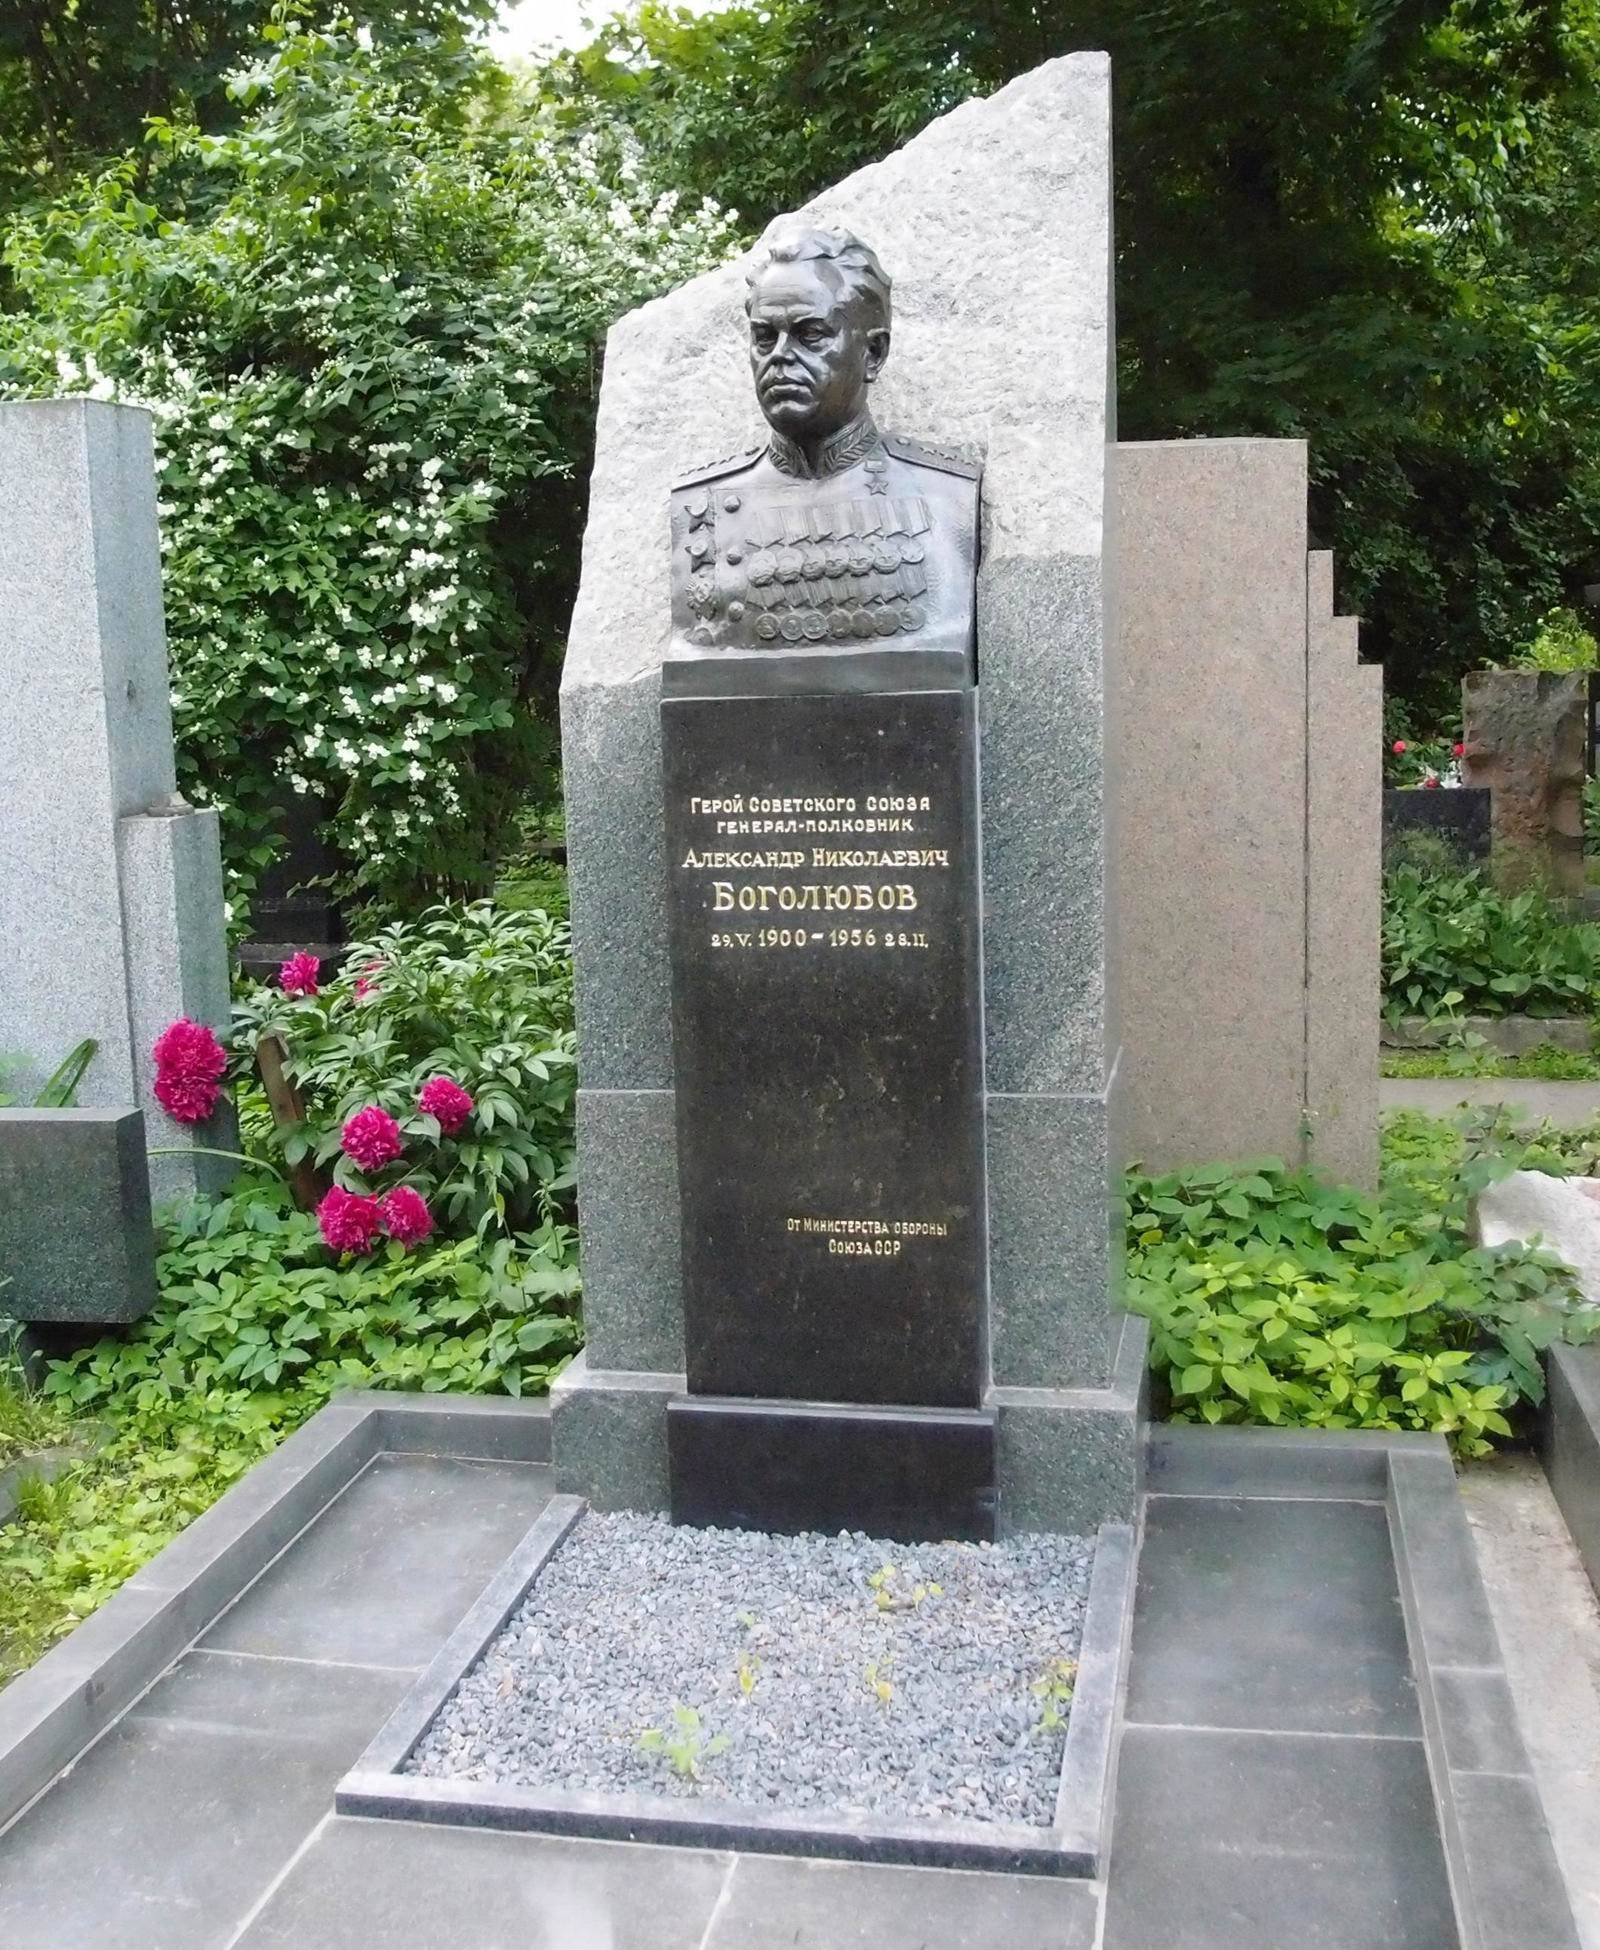 Памятник на могиле Боголюбова А.Н. (1900-1956), ск. Г.Постников, на Новодевичьем кладбище (4-61-6). Нажмите левую кнопку мыши чтобы увидеть фрагмент памятника.